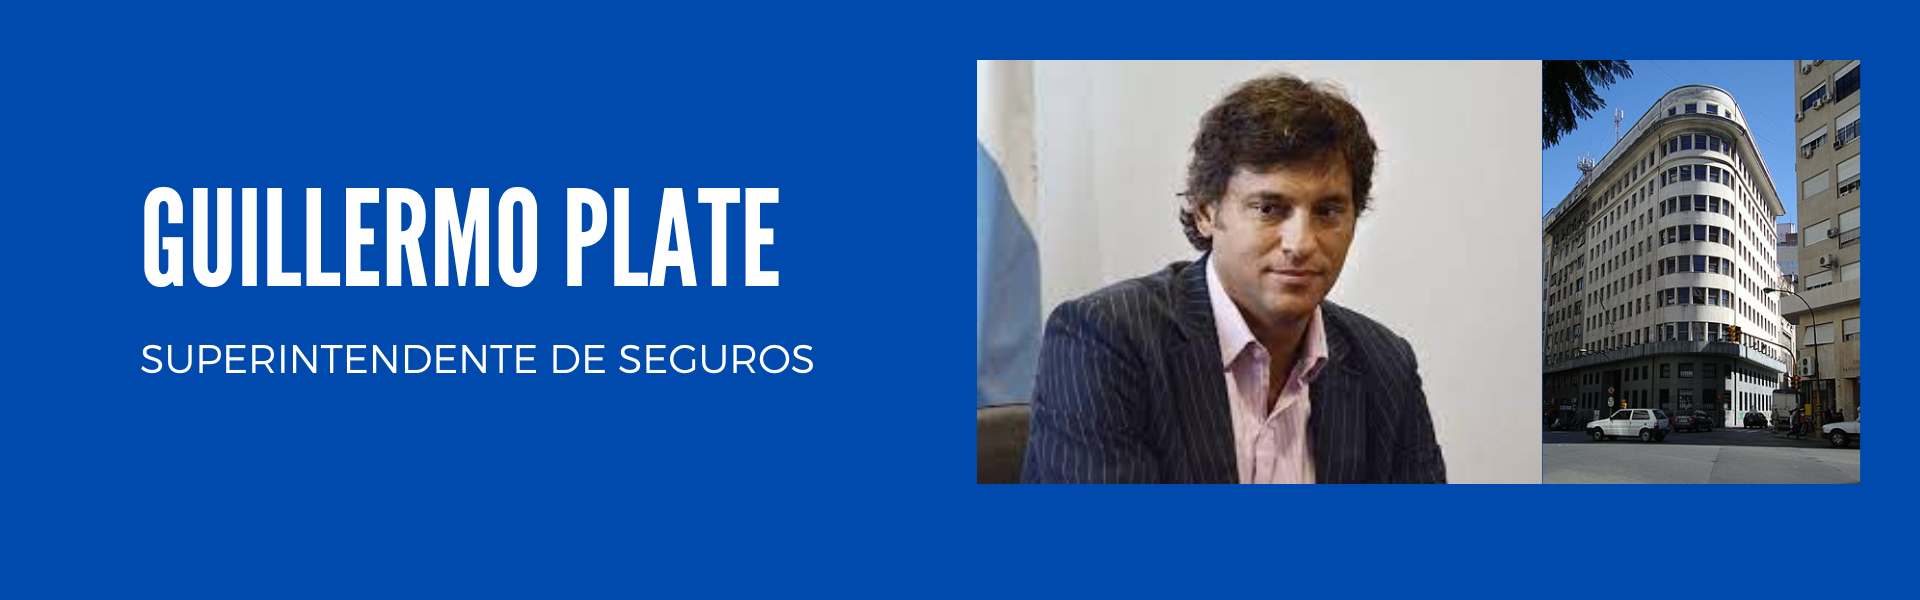 Guillermo Plate es el nuevo Superintendente de Seguros thumbnail